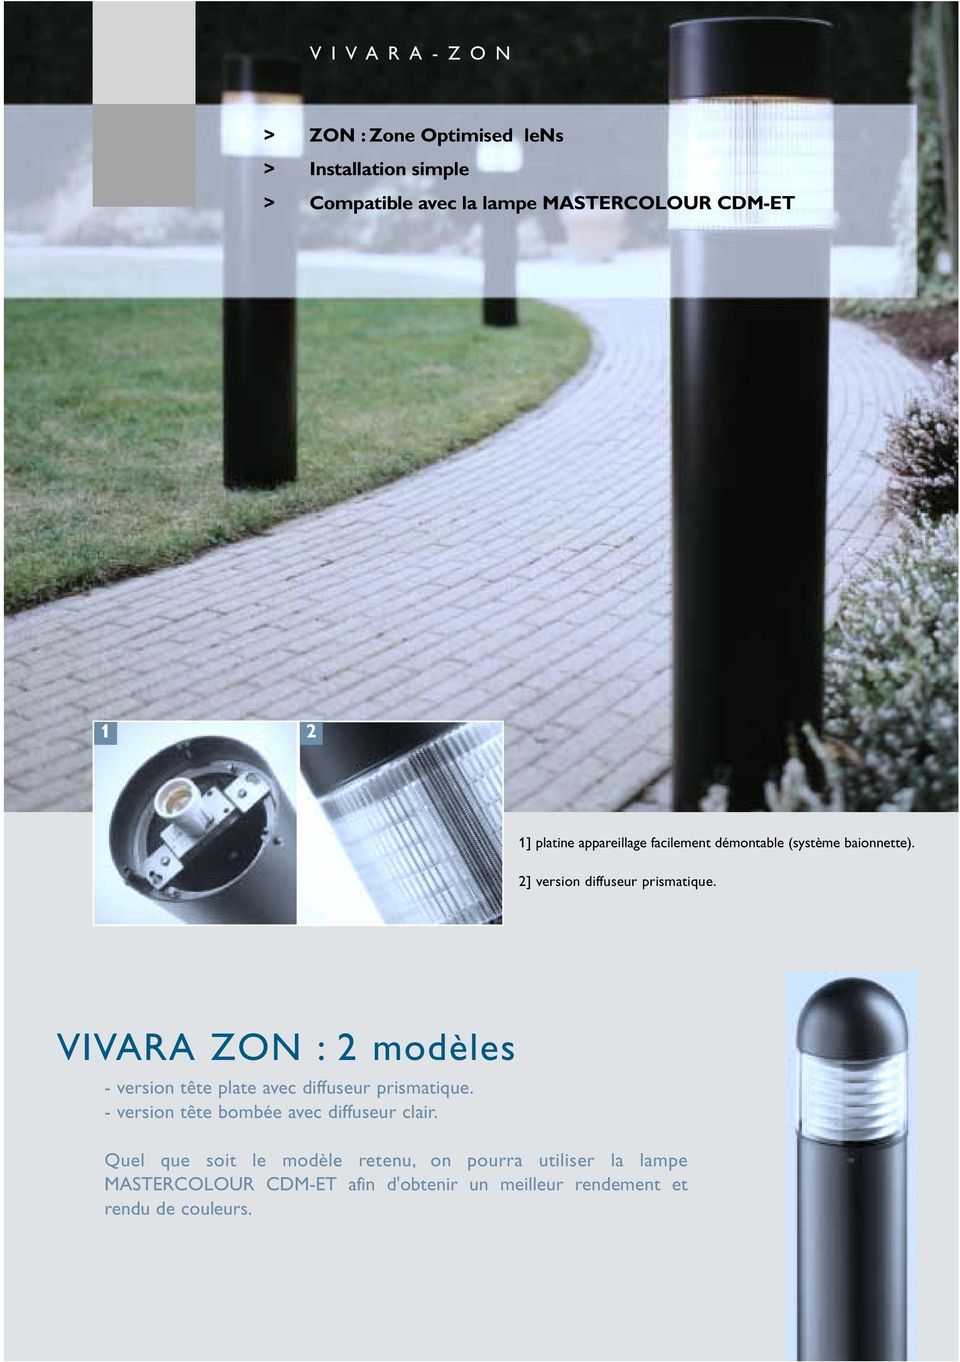 VIVARA ZON : 2 modèles - version tête plate avec diffuseur prismatique. - version tête bombée avec diffuseur clair.